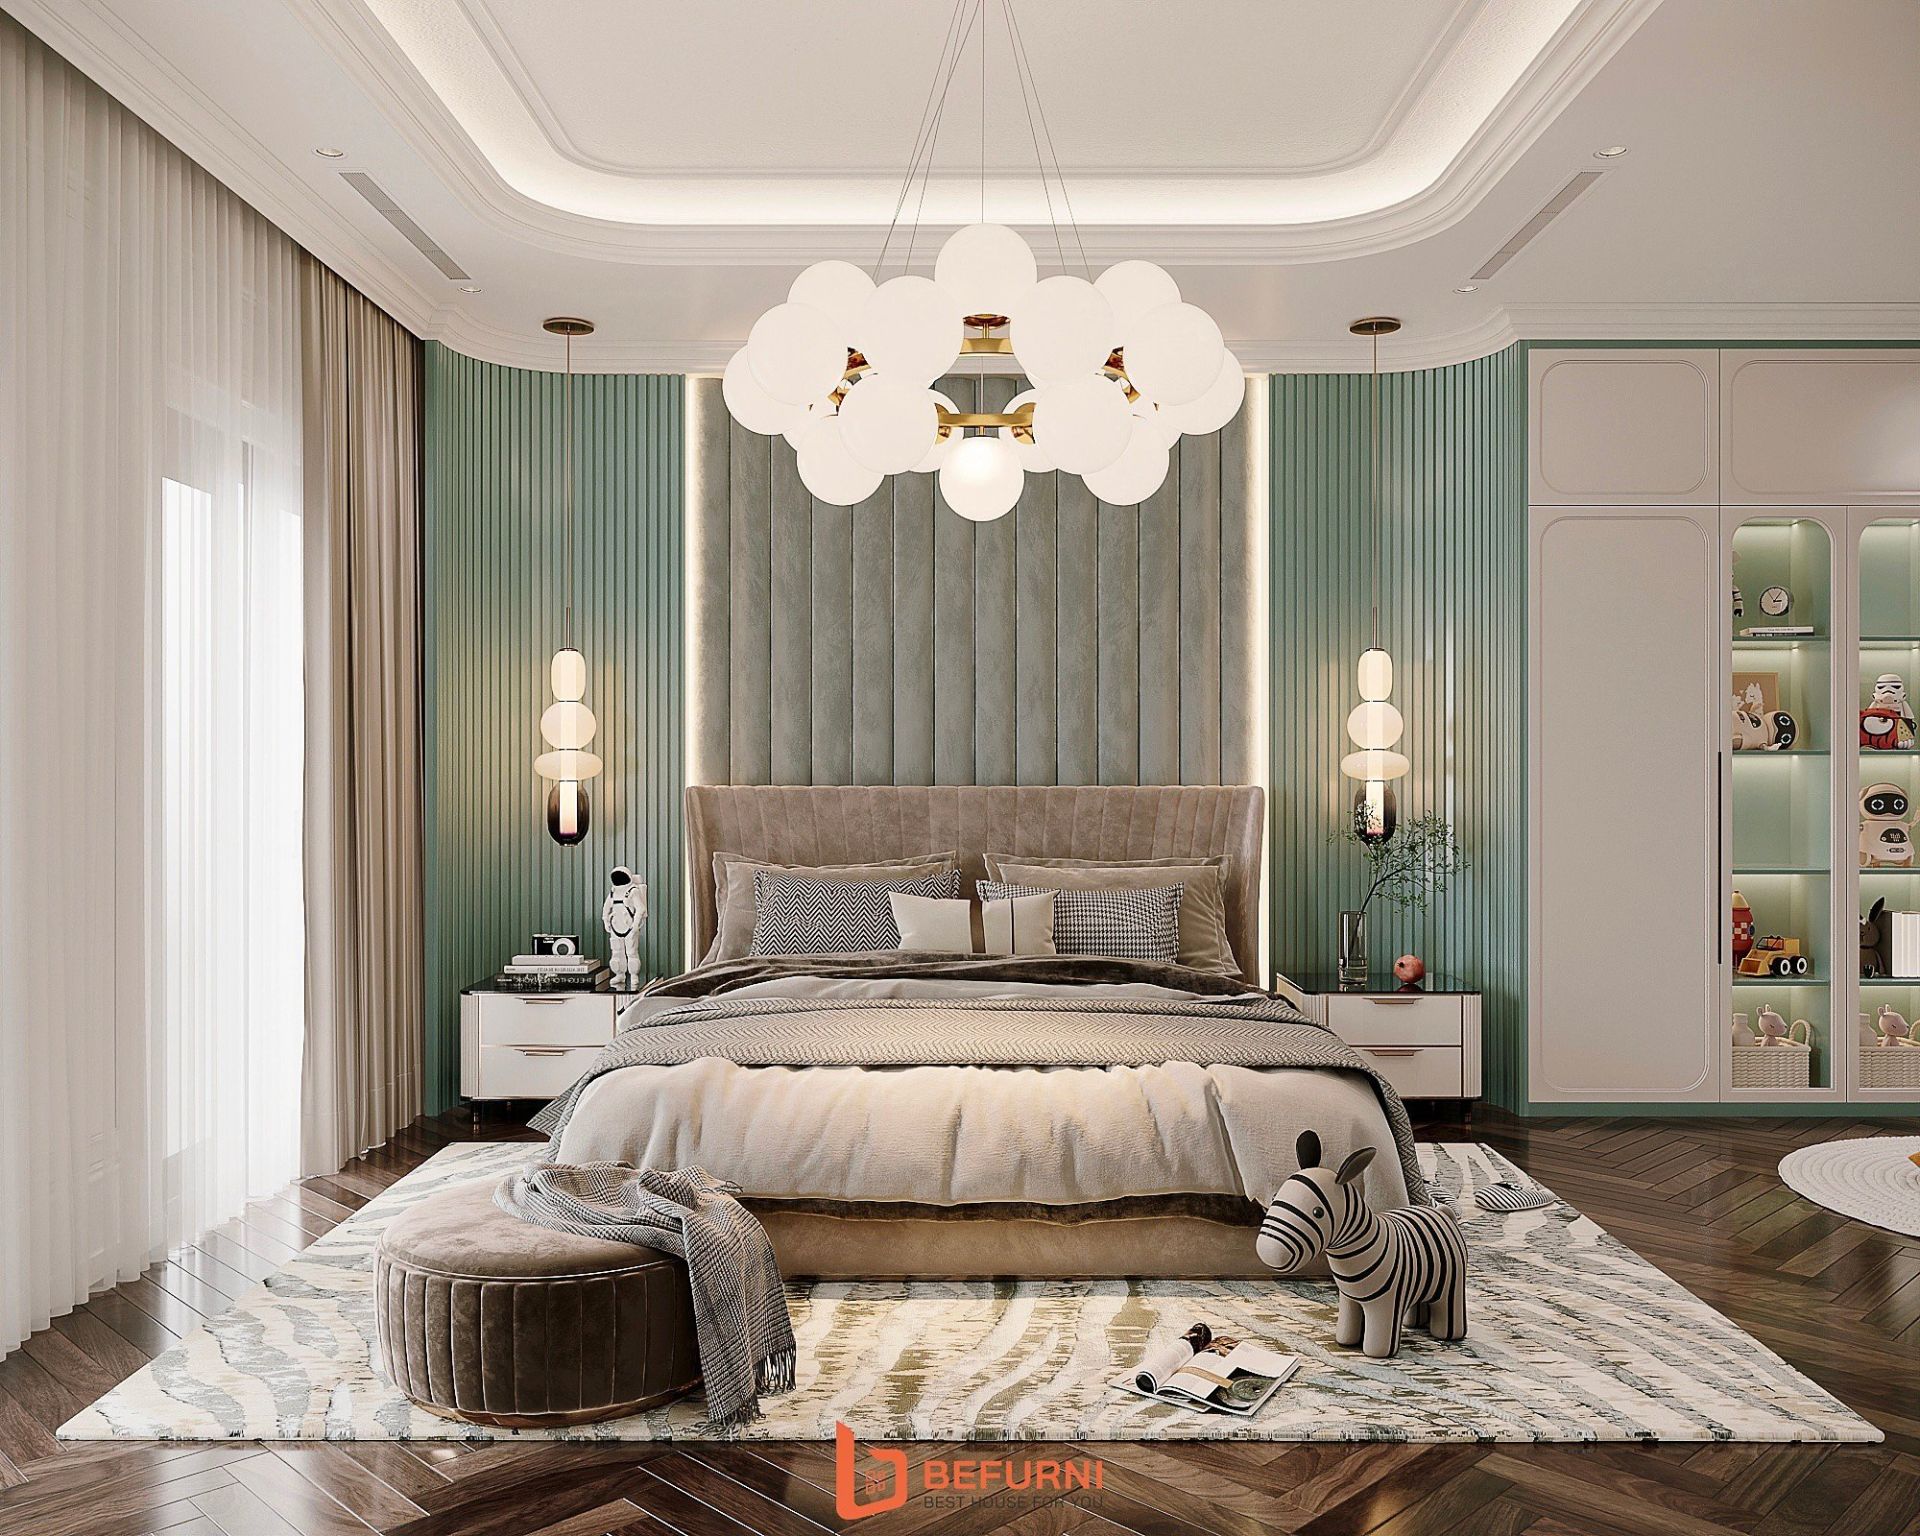 Nội thất tân cổ điển Luxury -  Không gian sống hoàn hảo cho người thích sự cổ điển và hiện đại